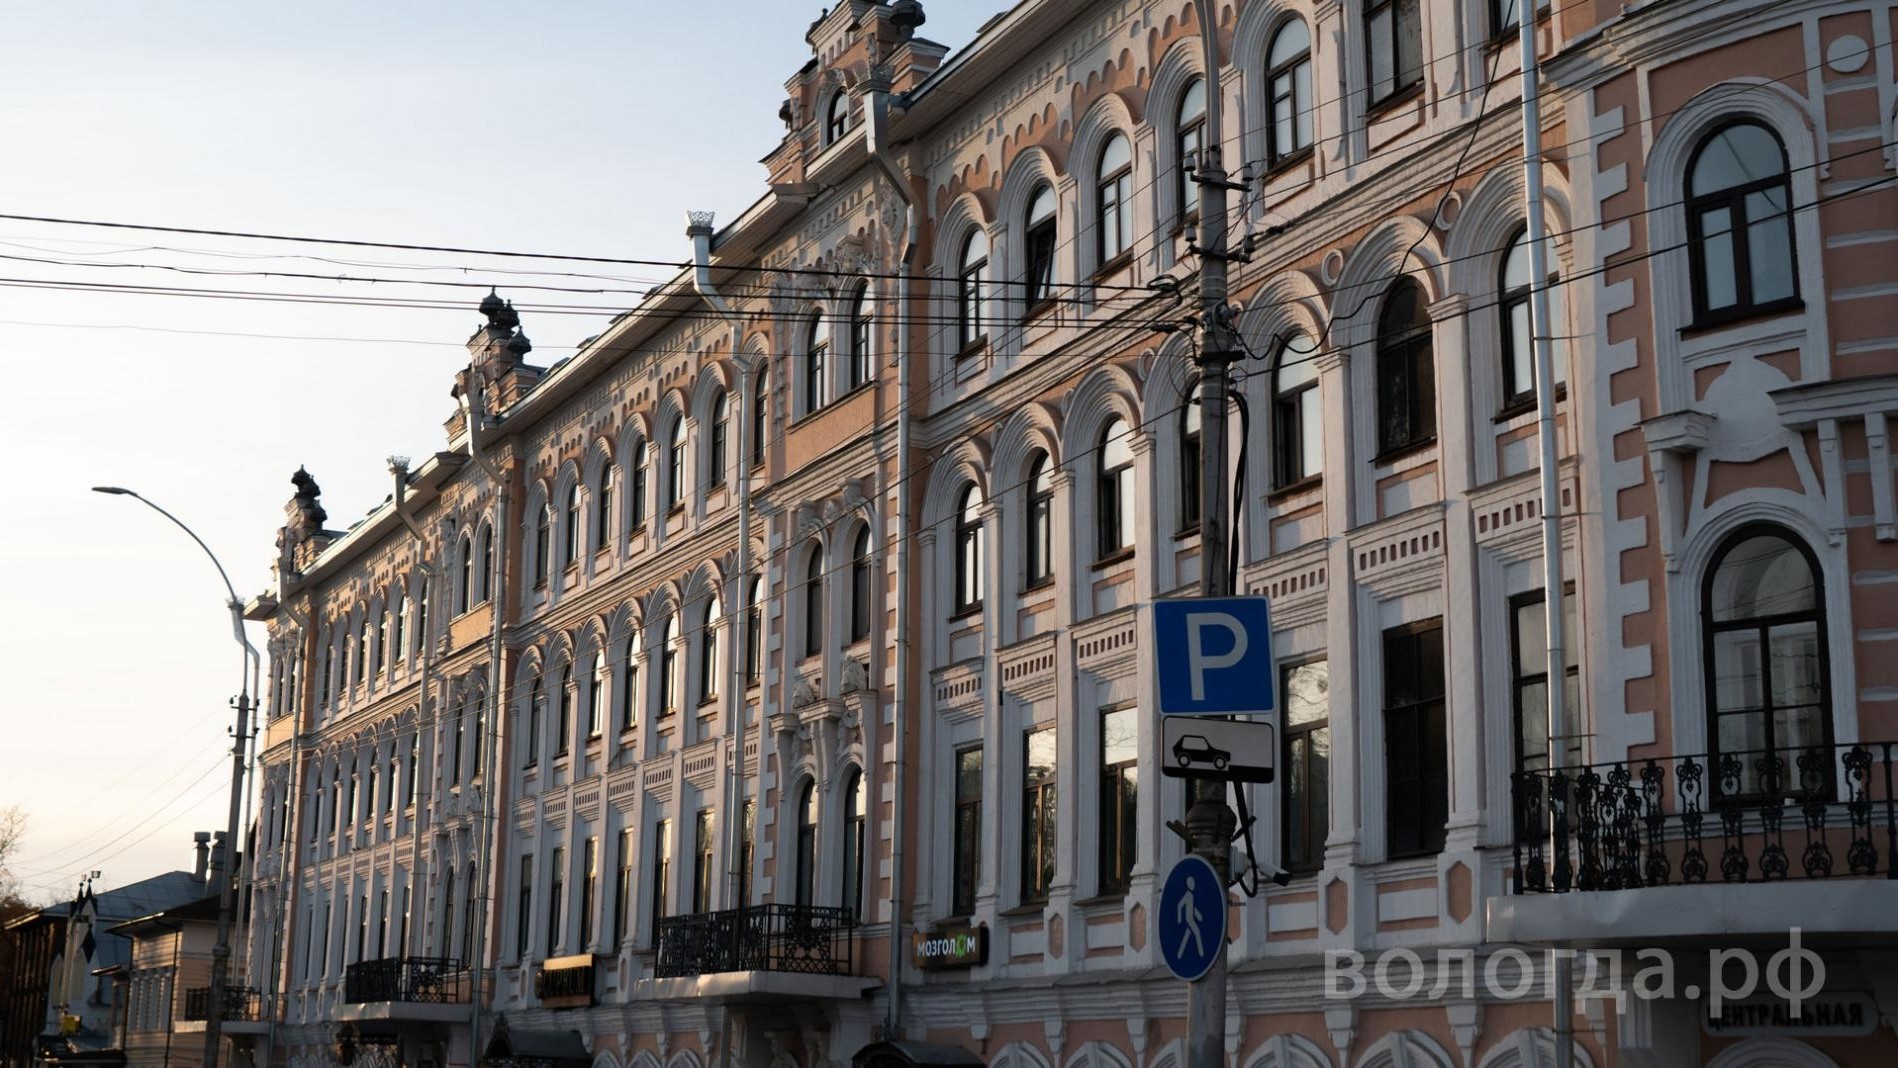 Вологда — «Город, где хочется жить»